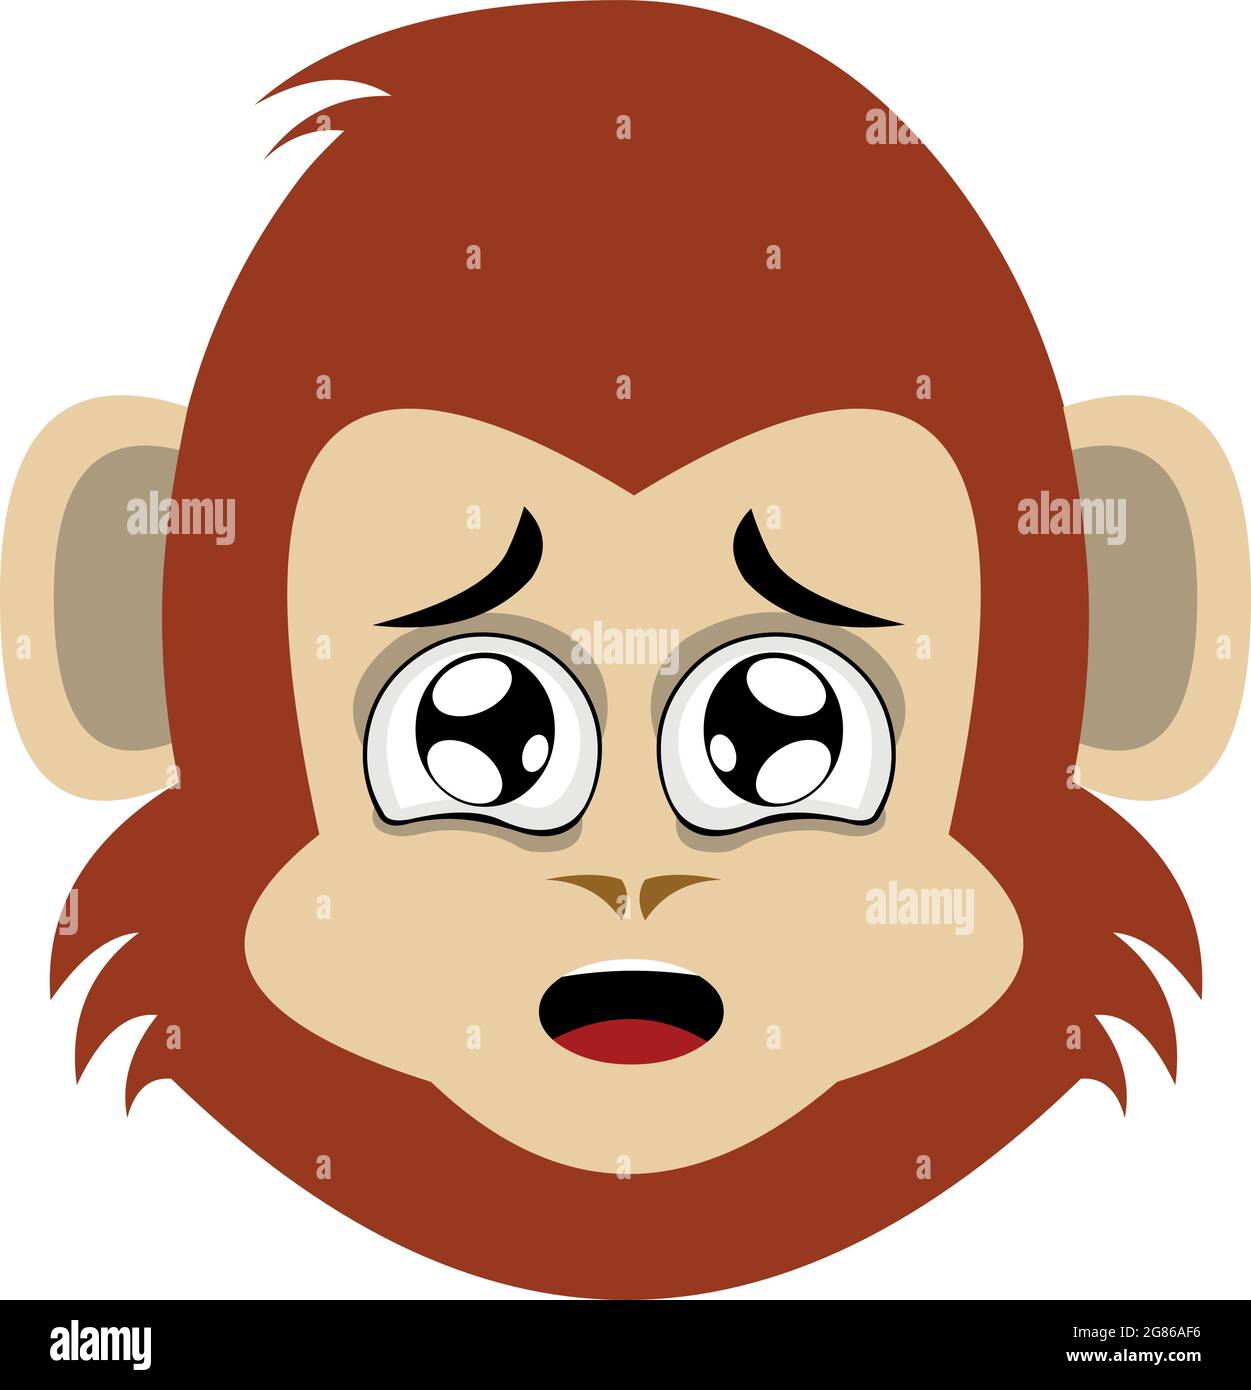 Illustrazione di emoticon vettoriale del volto di una scimmia cartoon o scimpanzee con un'espressione di paura Illustrazione Vettoriale